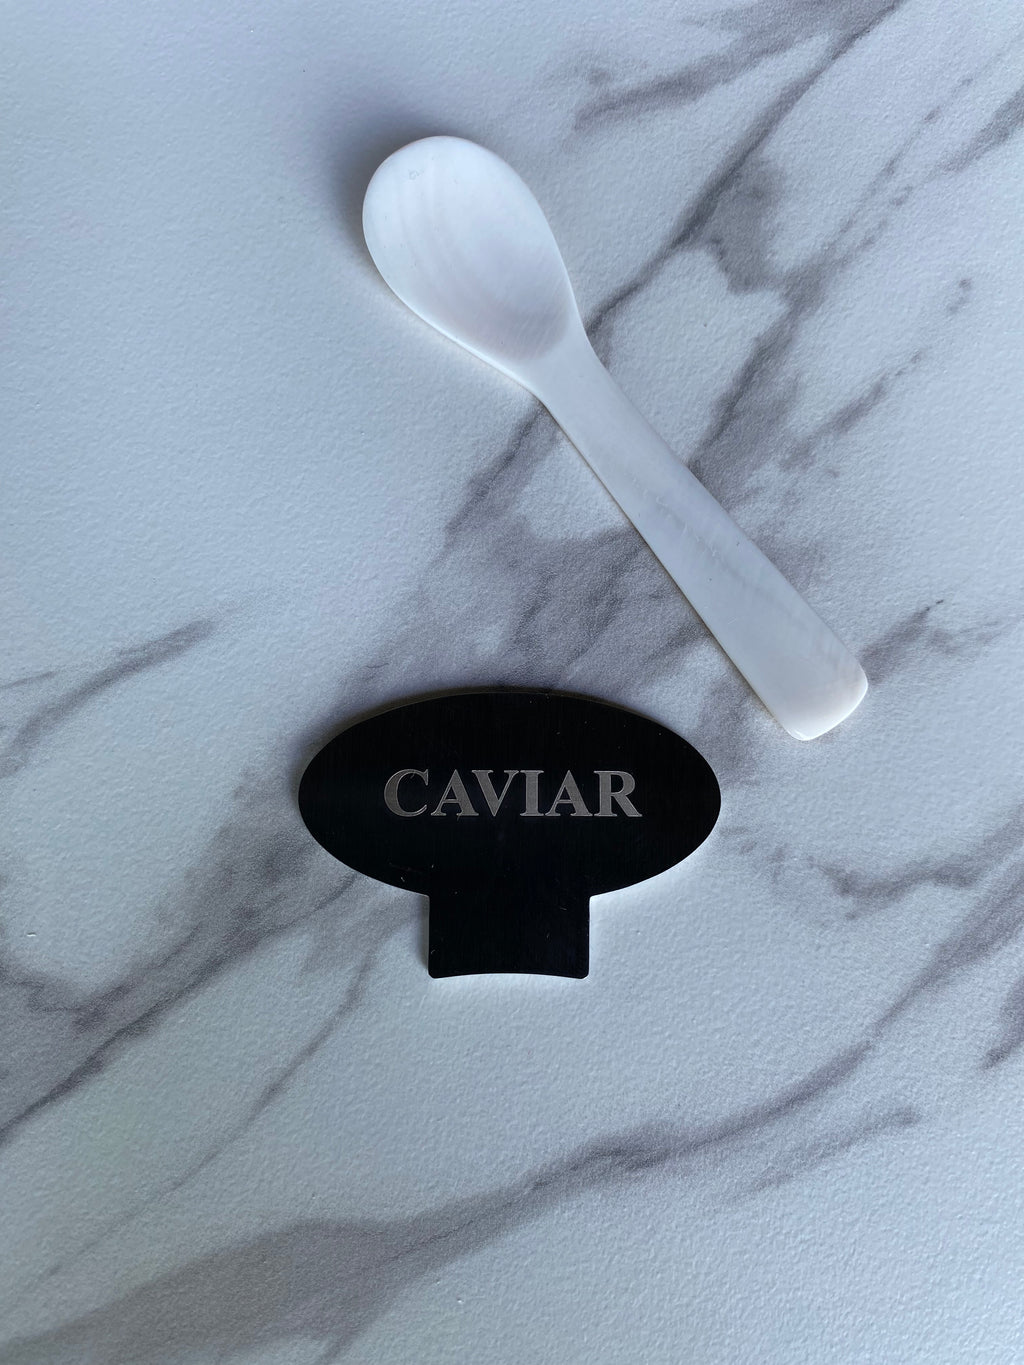 Clé et cuillère à caviar